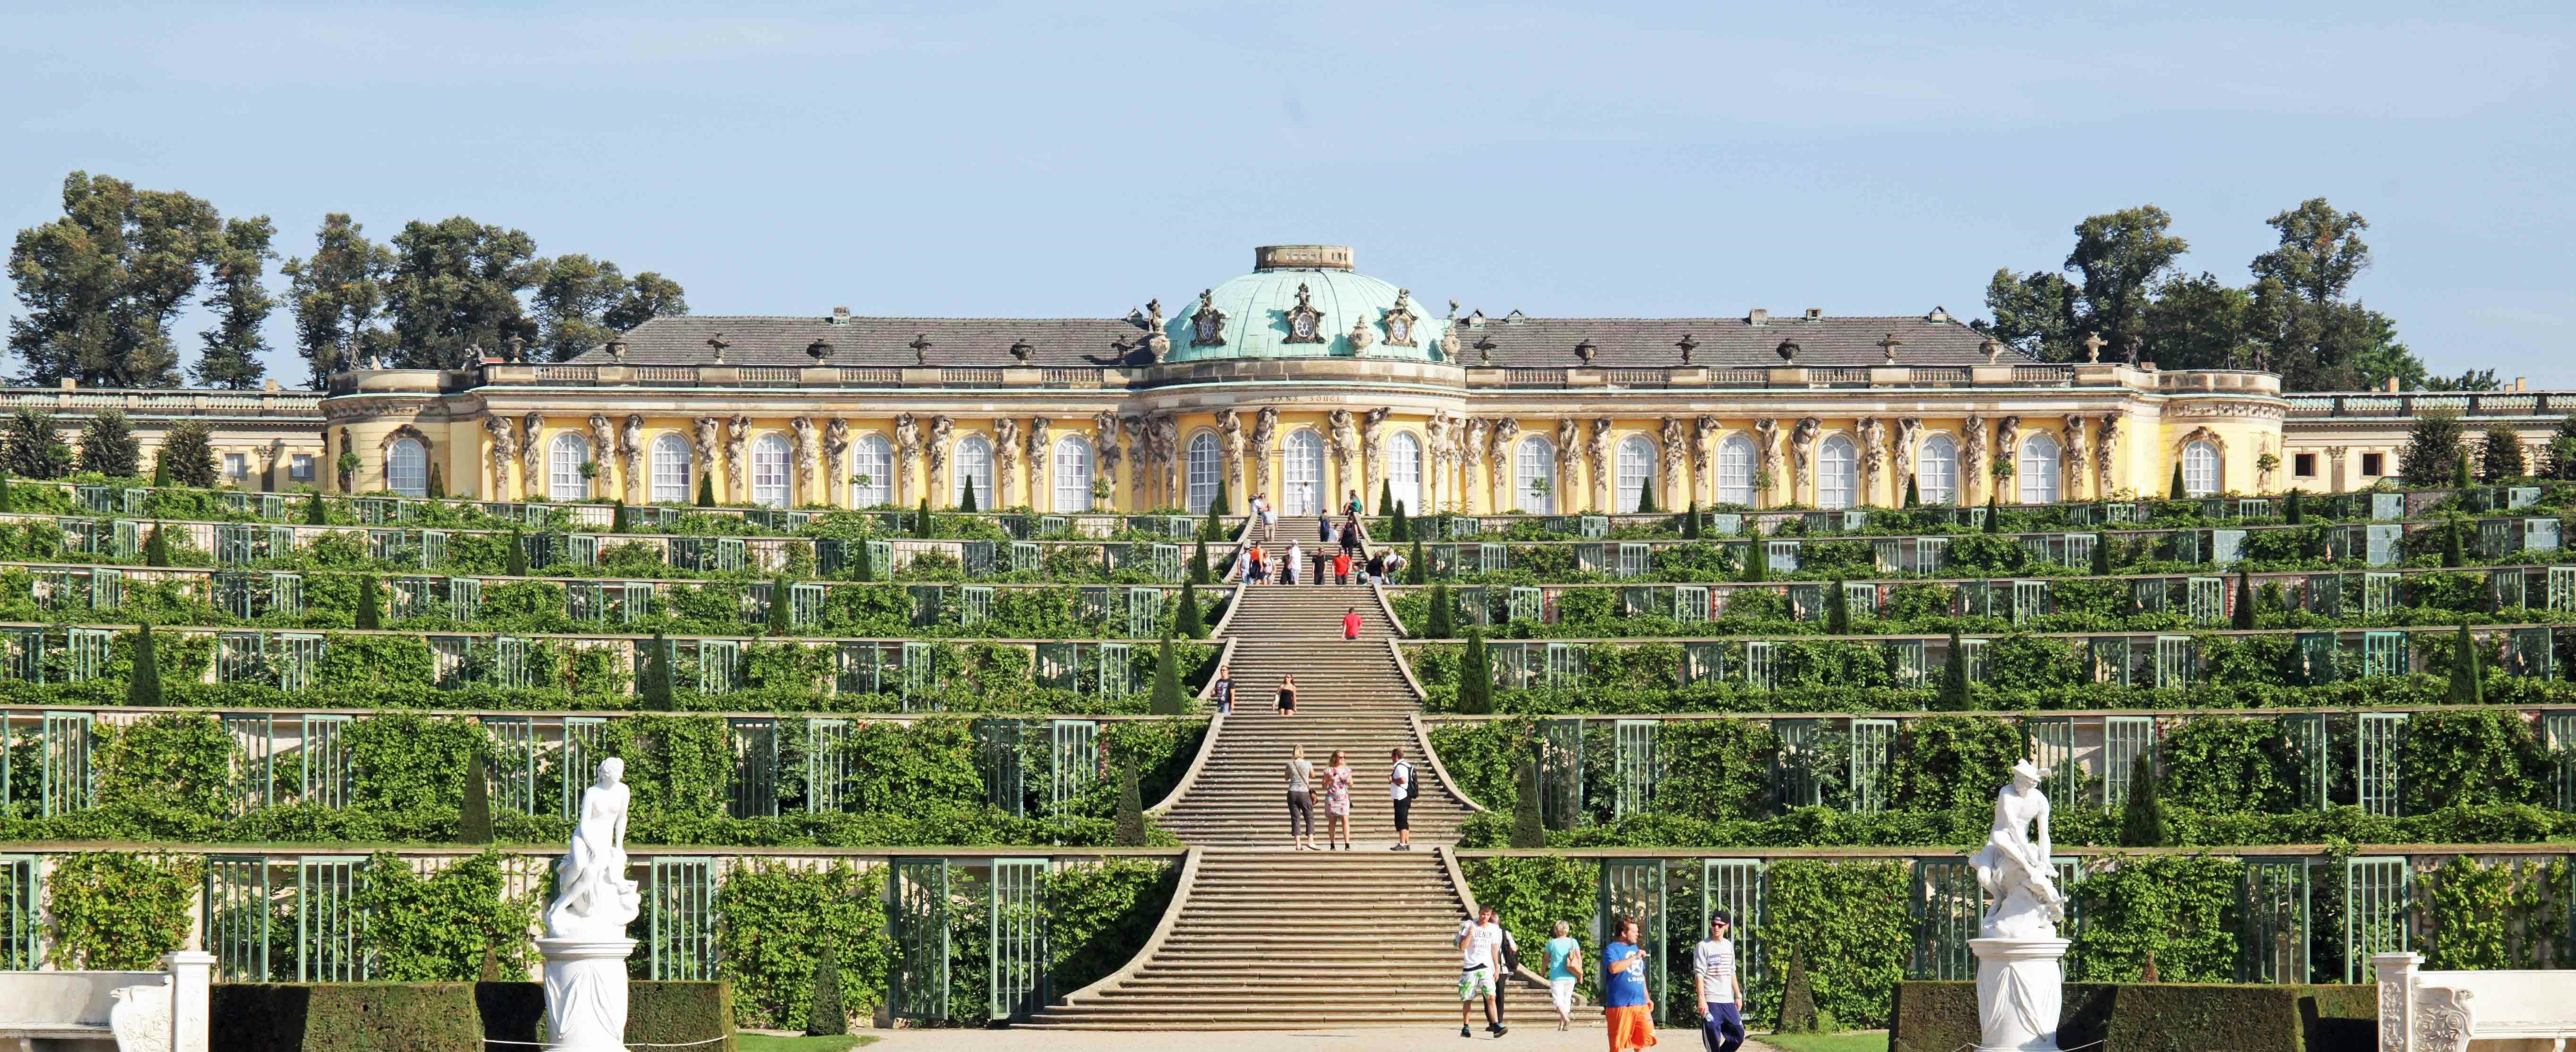 Excursión de un día por lo mejor de Potsdam desde Berlín